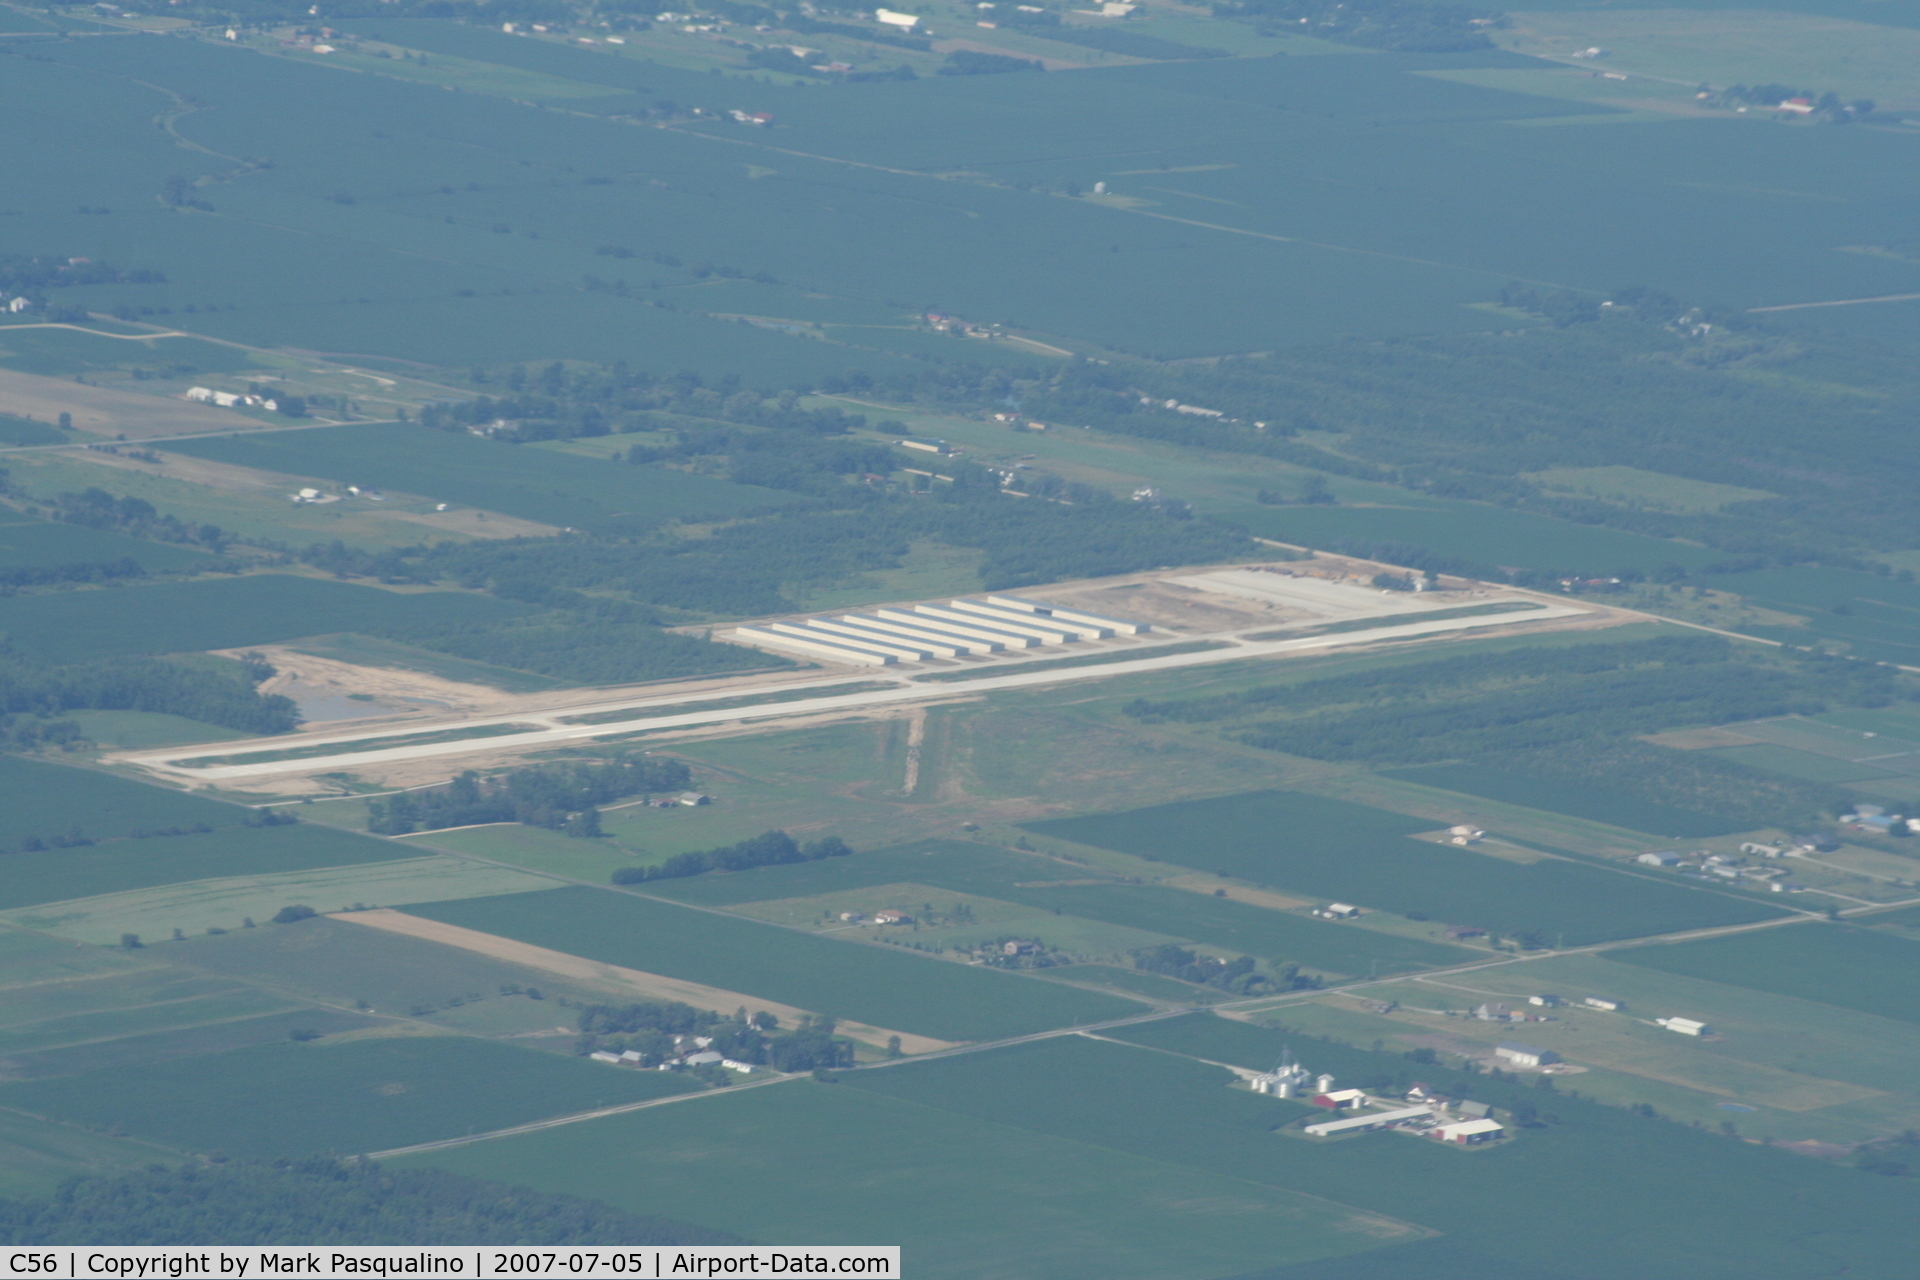 Bult Field Airport (C56) - Monee, IL